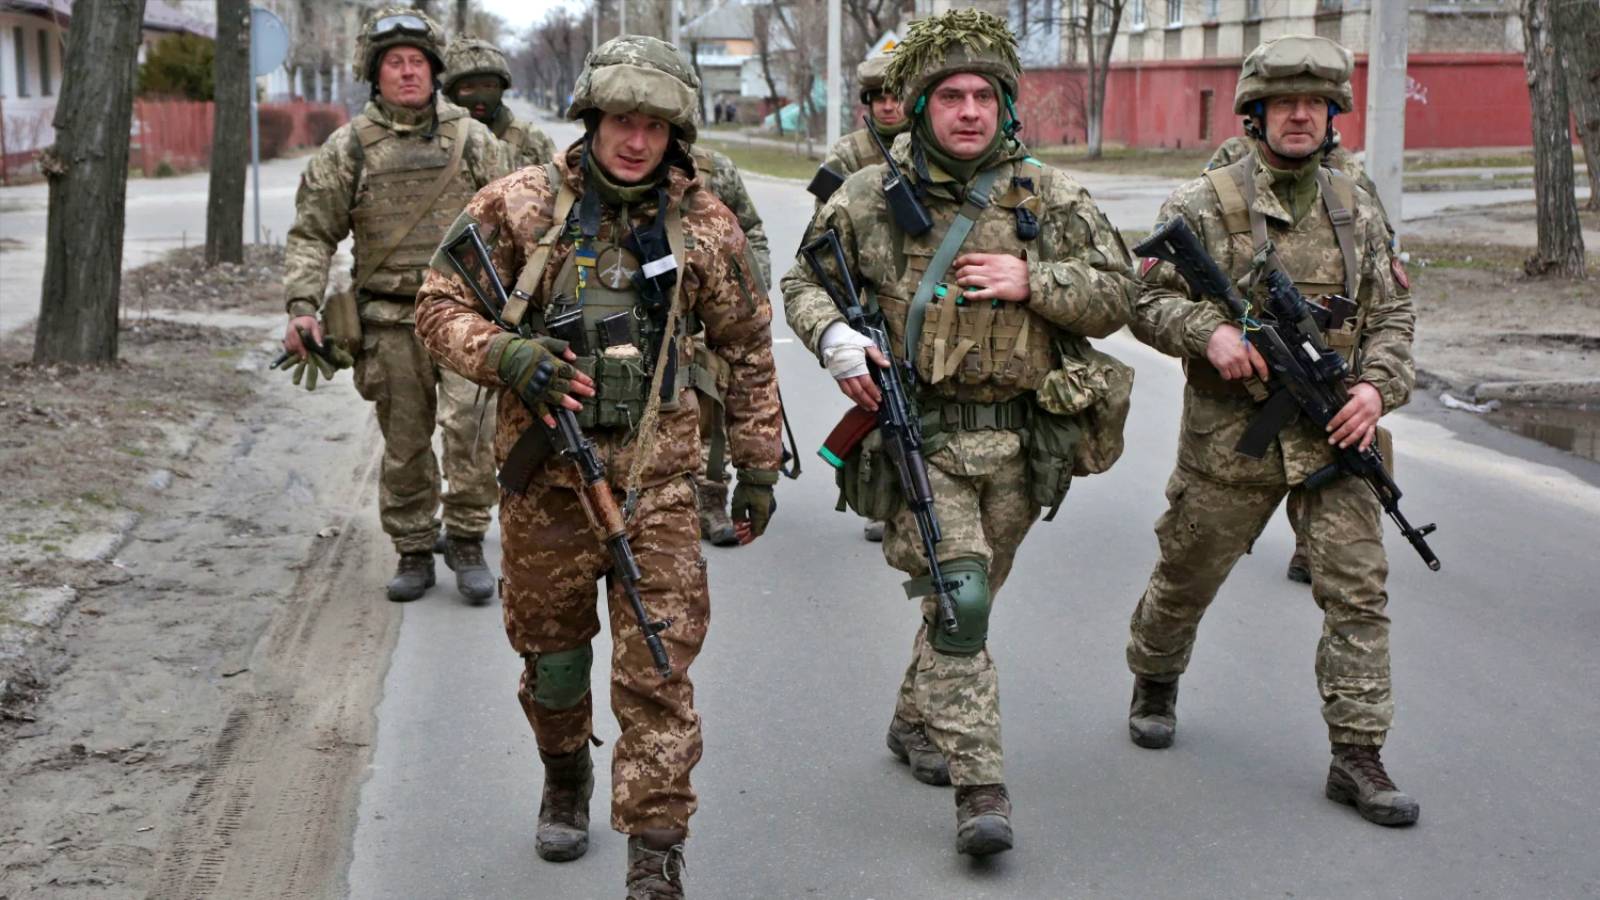 WIDEO Pole bitwy pod Kijowem Prezentowane zdjęcia Ukraina